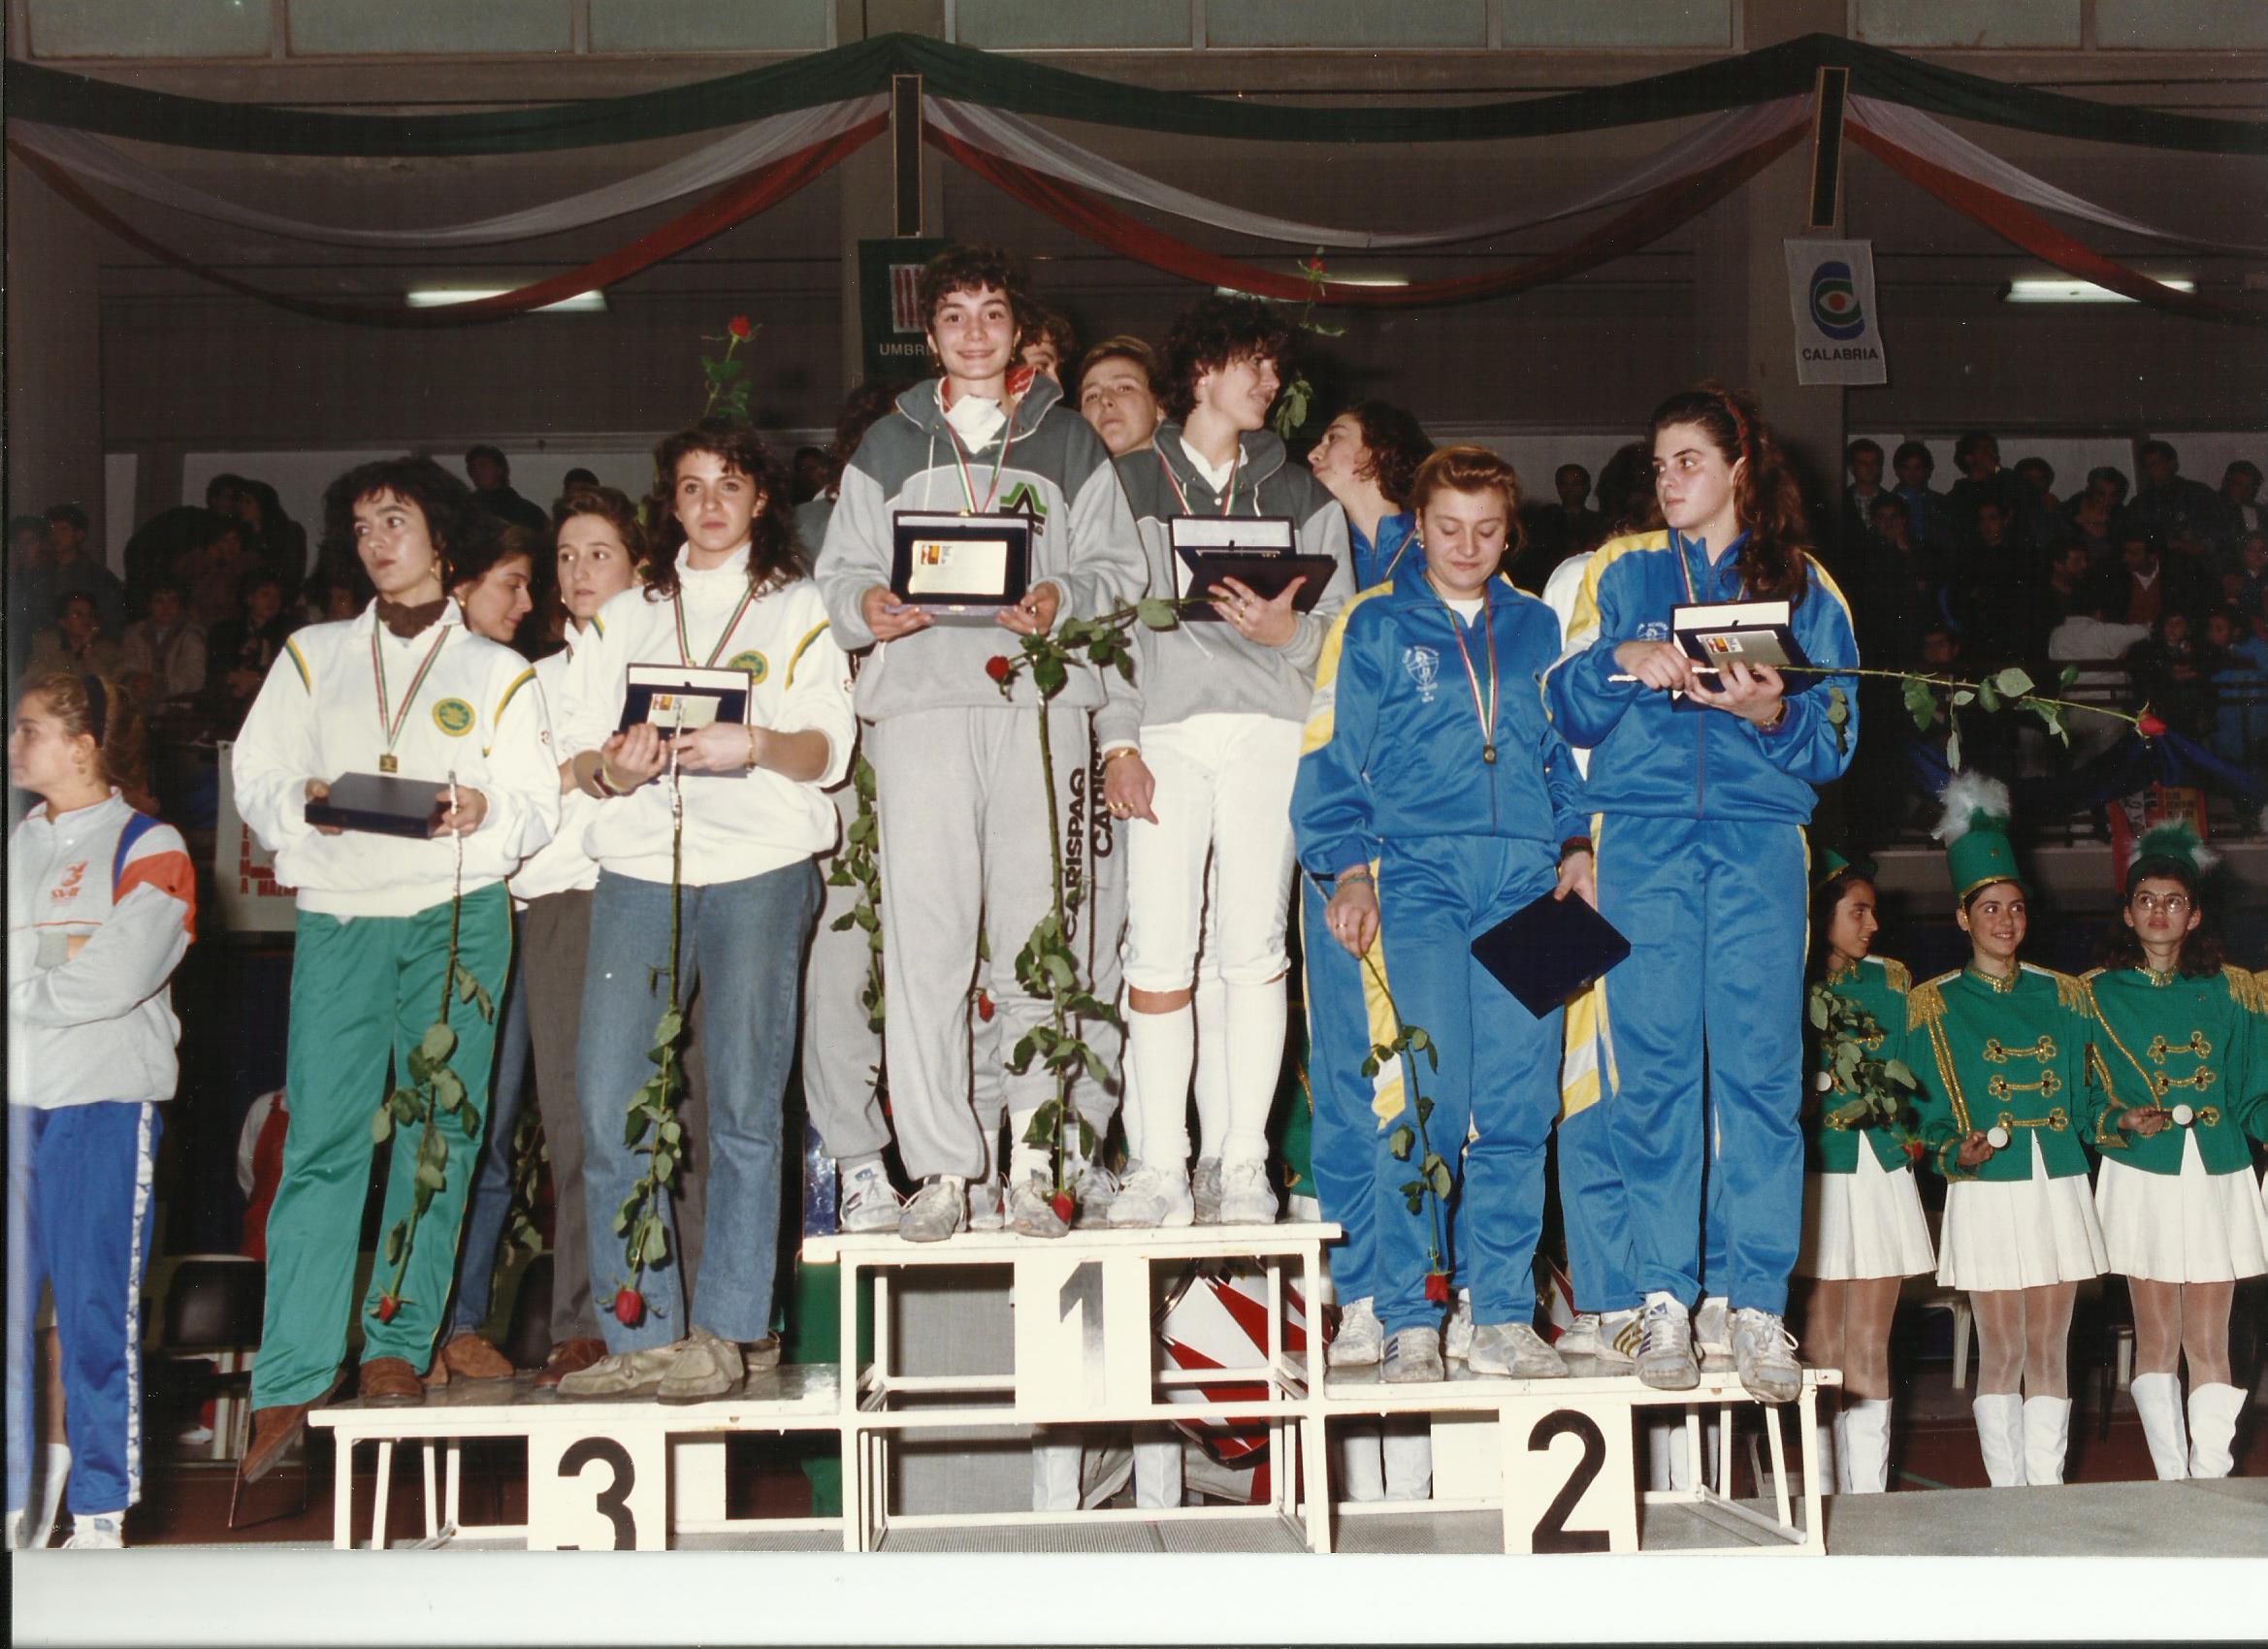 1990 Campionato Italiano Assoluto a squadre: Cocciano si aggiudica il titolo con Elisabetta e Roberta Castrucci, Barbara Marinucci, Alessandra Nucci e Maria Agnese Rinaldi.